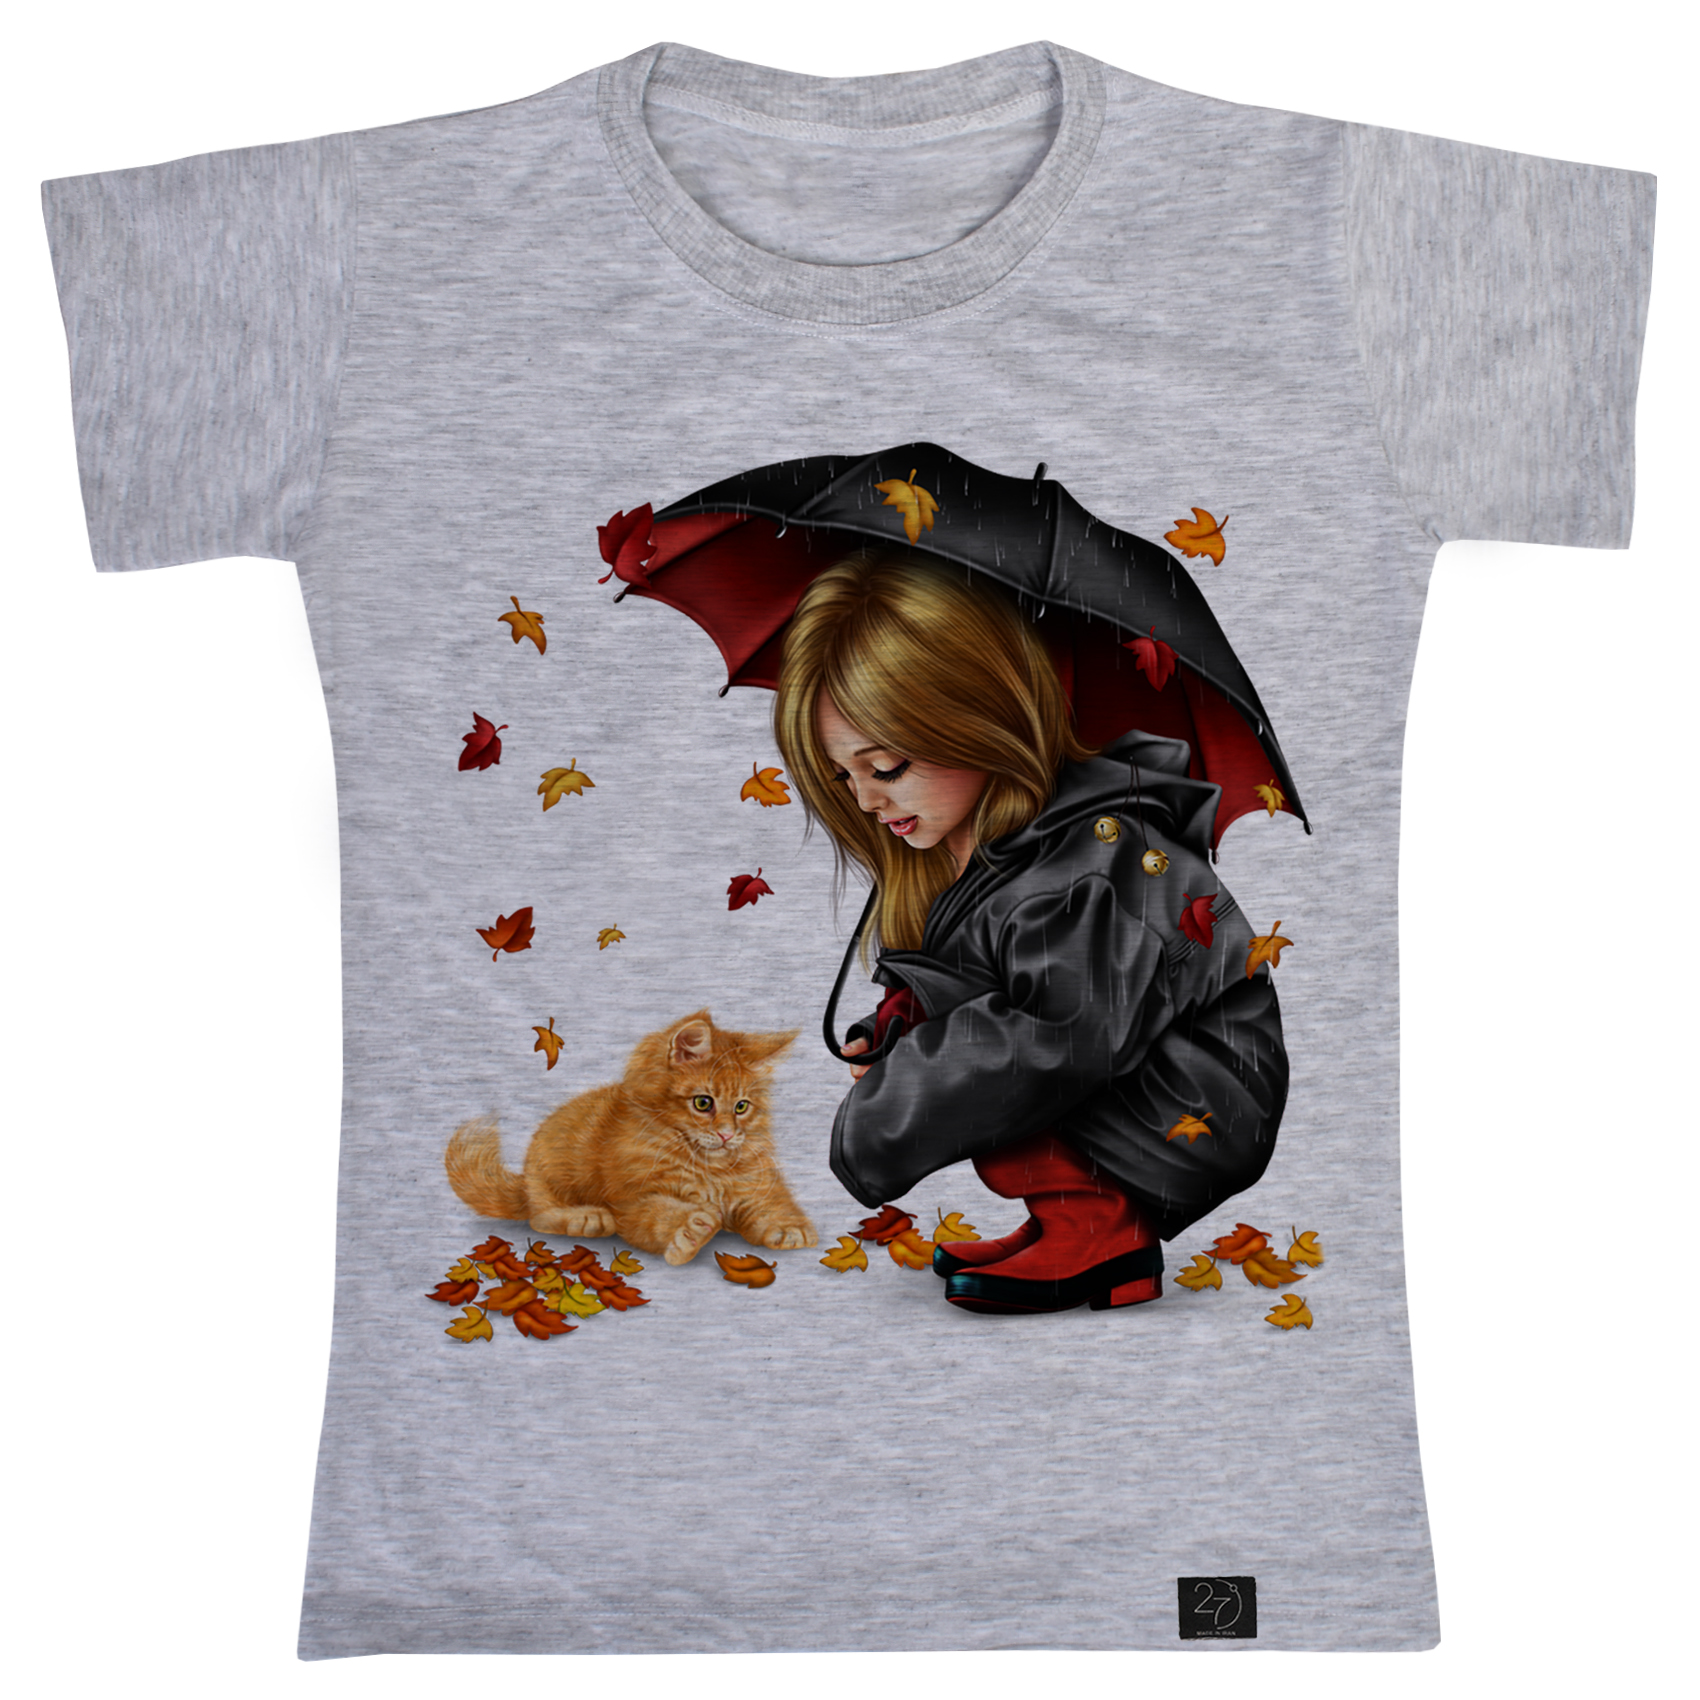 تی شرت دخترانه 27 مدل دختر و گربه کد B61